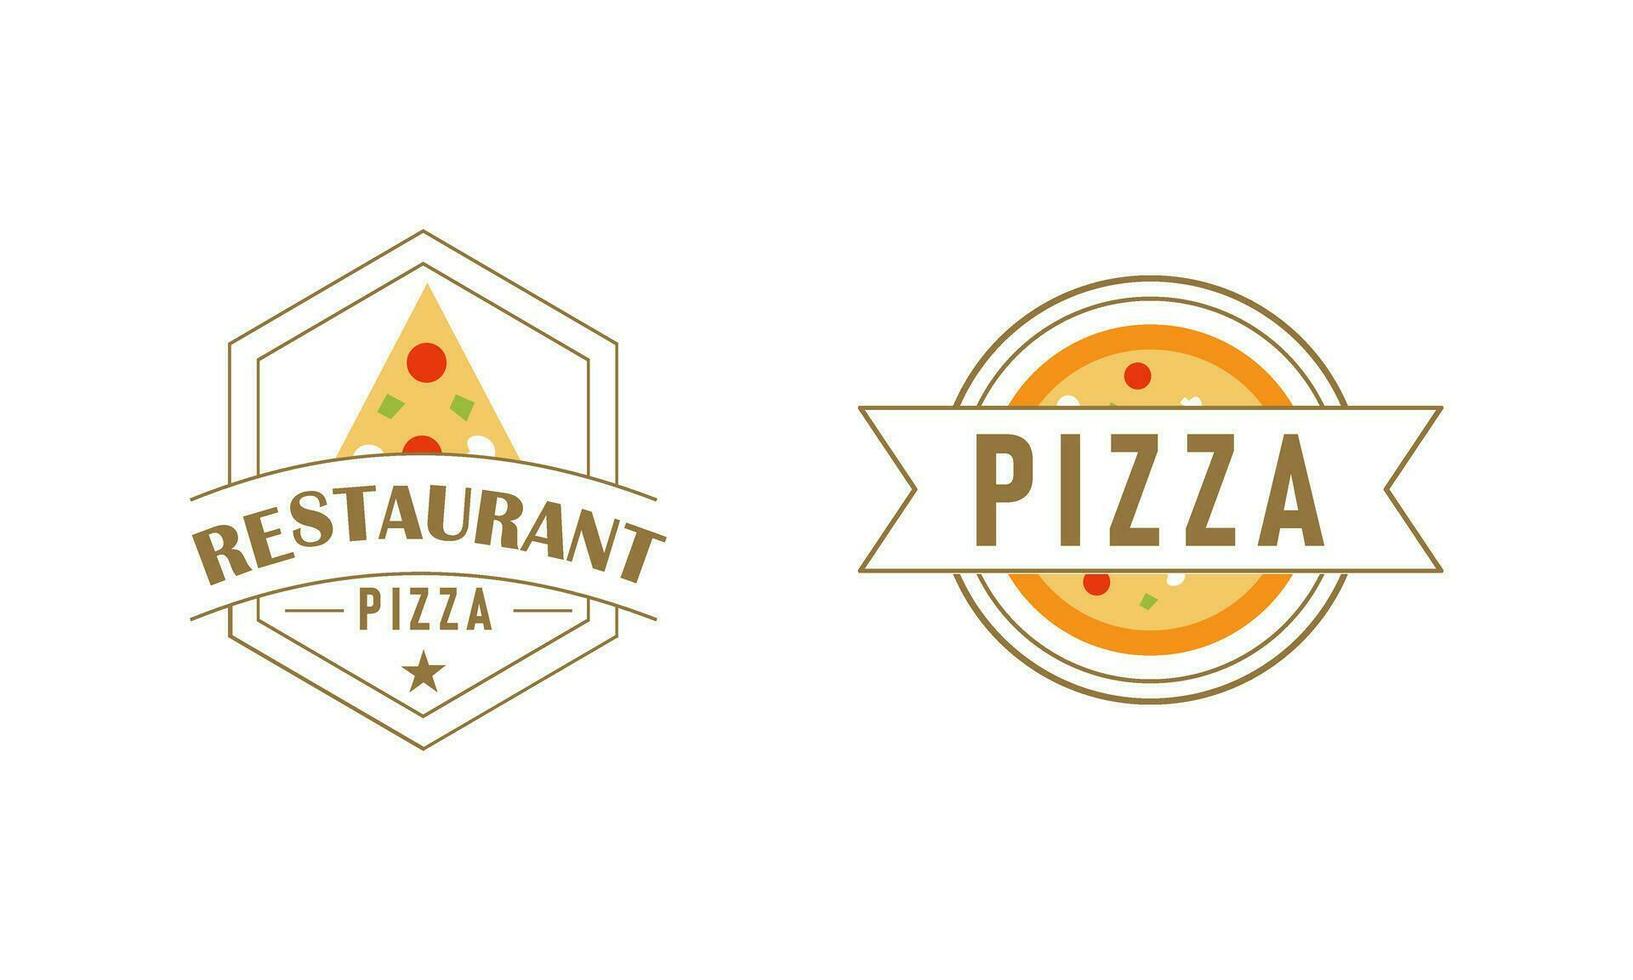 Pizza logo, íconos y diseño elementos para pizzería vector